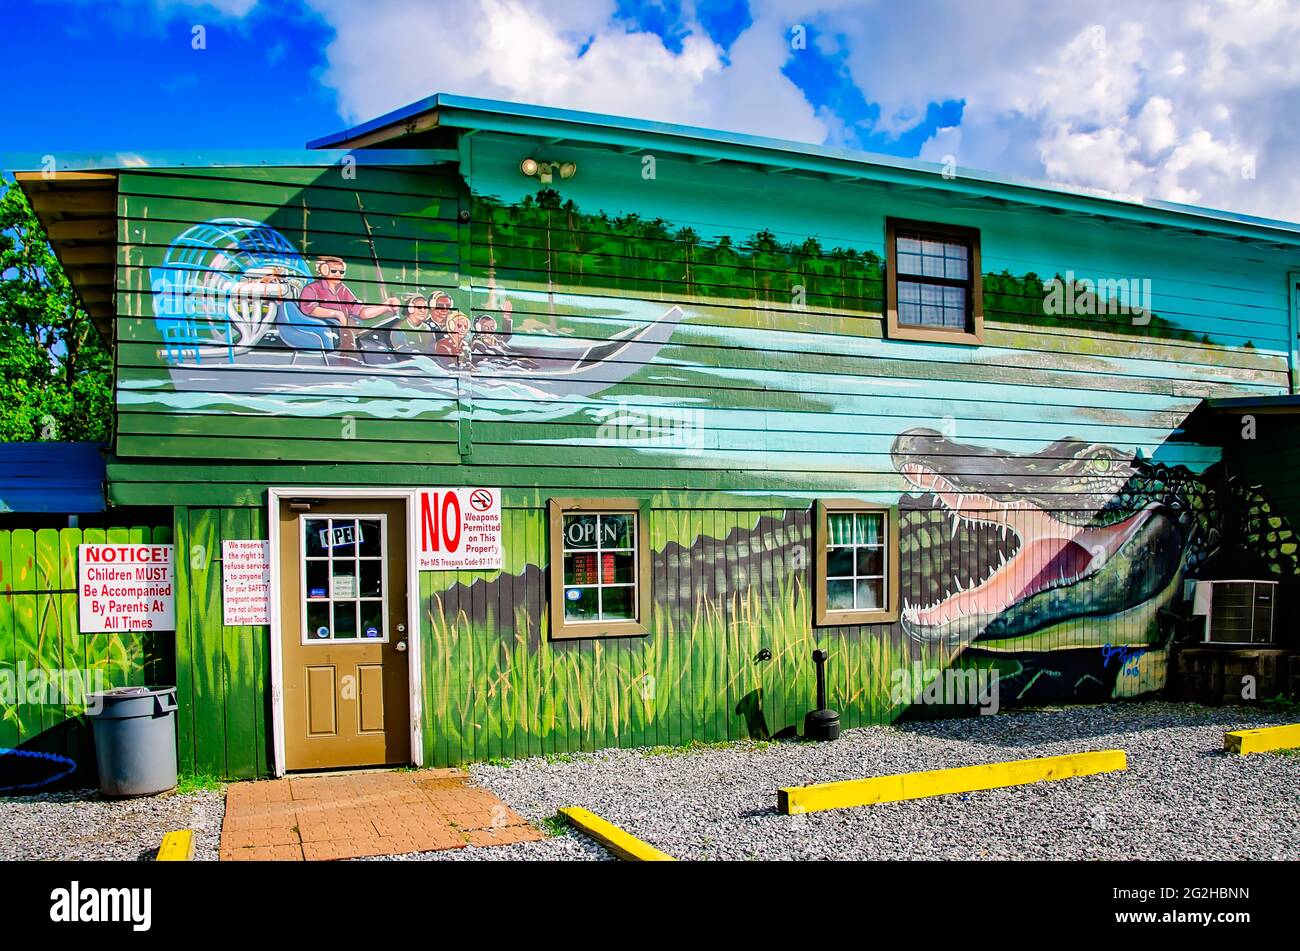 Le bâtiment Gulf Coast Gator Ranch and Tours présente une fresque d'alligators, le 9 juin 2021, à Moss point, Mississippi. Banque D'Images